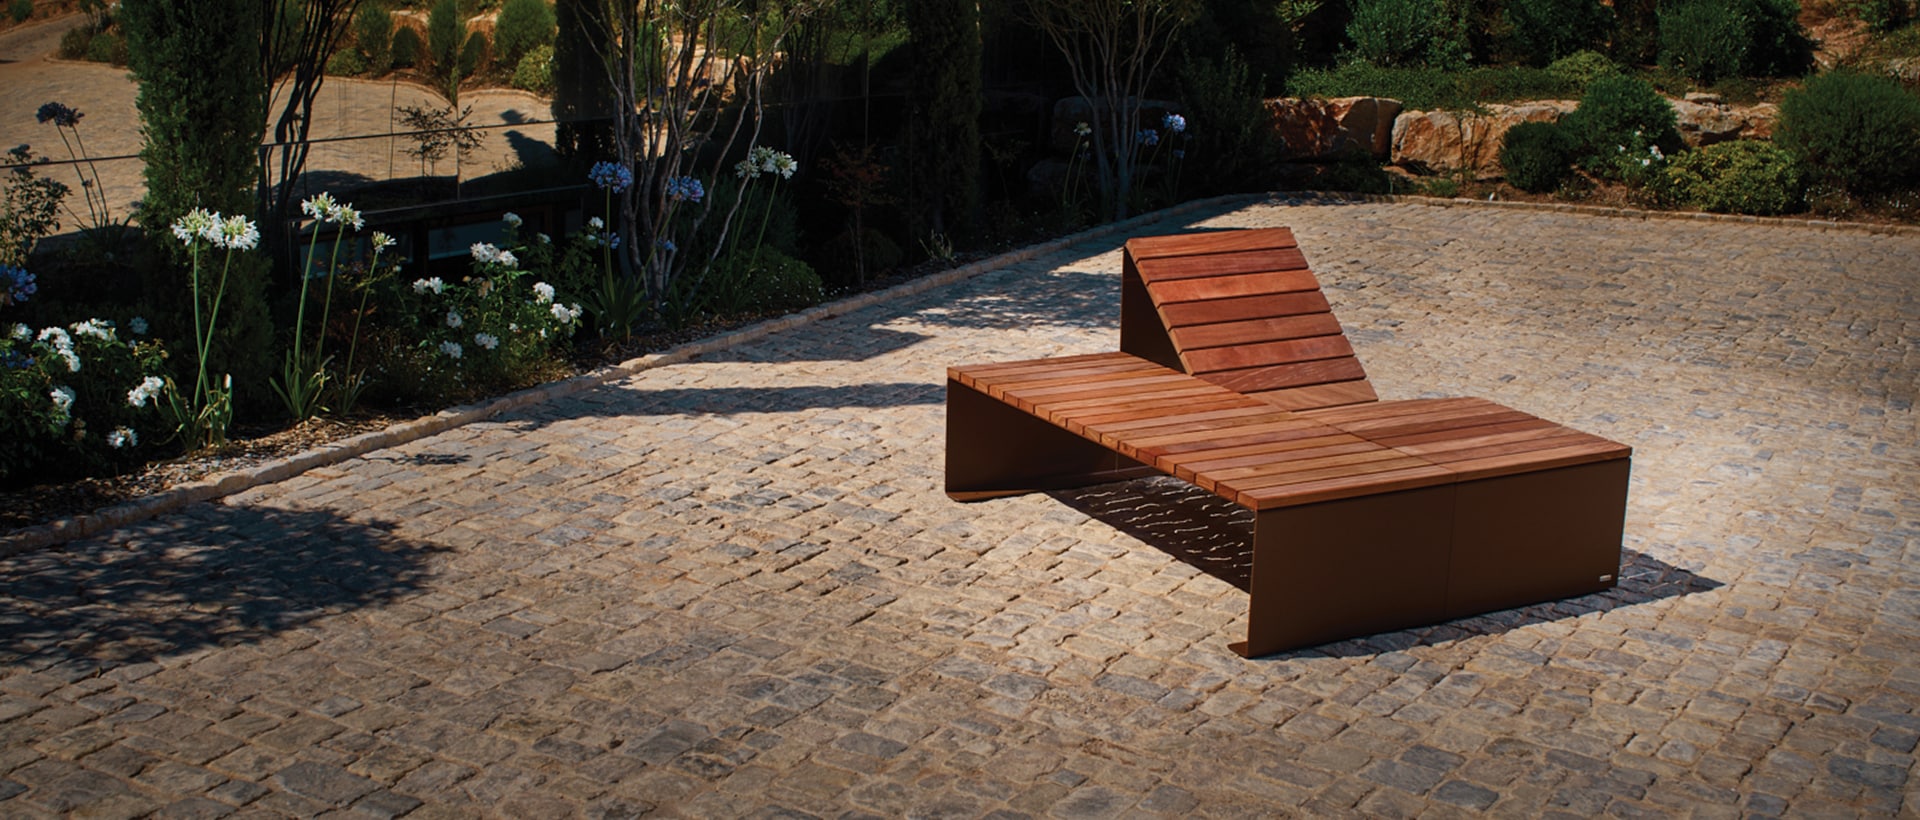 Linéaire de chaise longue ABSOLUT en acier thermolaqué et bois exotiques FSC fabriqué par CYRIA fabricant français de mobilier urbain